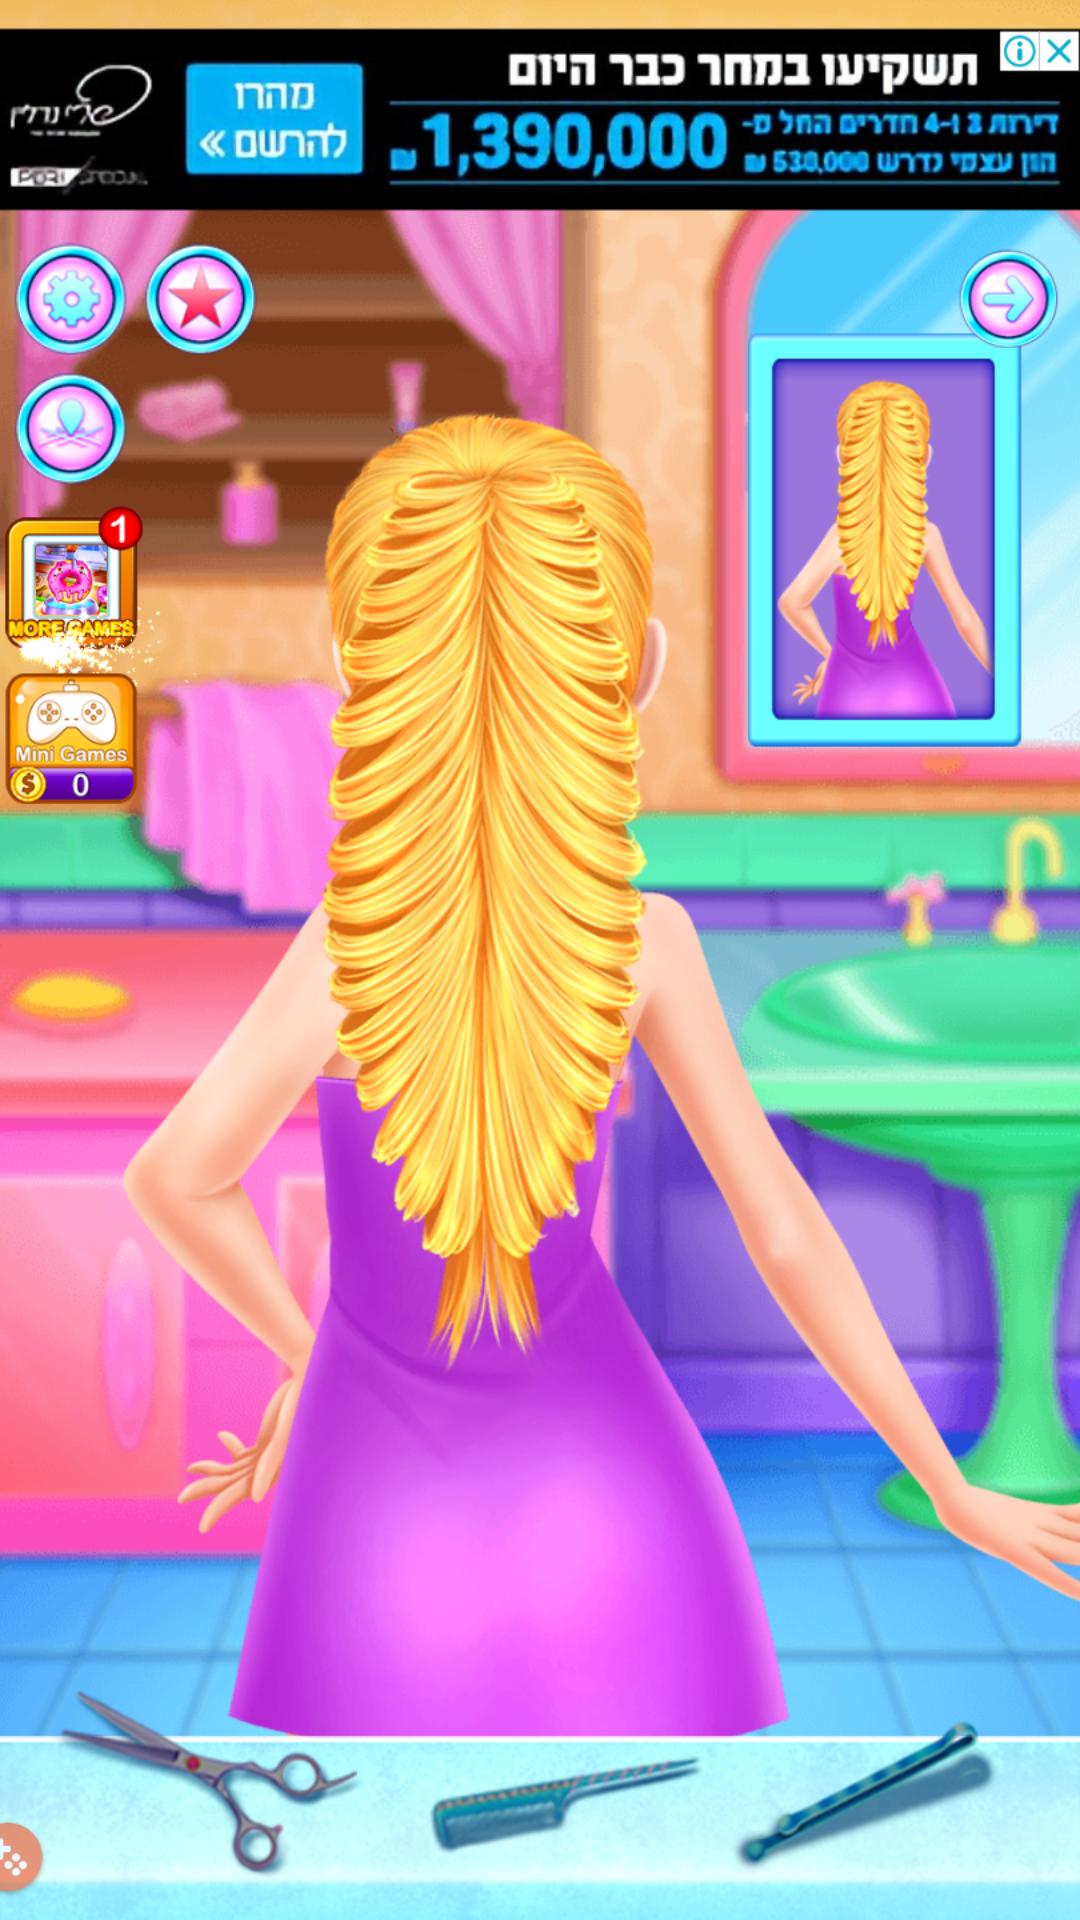 Android용 لعبة صالون بنات ذات الشعر الطويل APK 다운로드